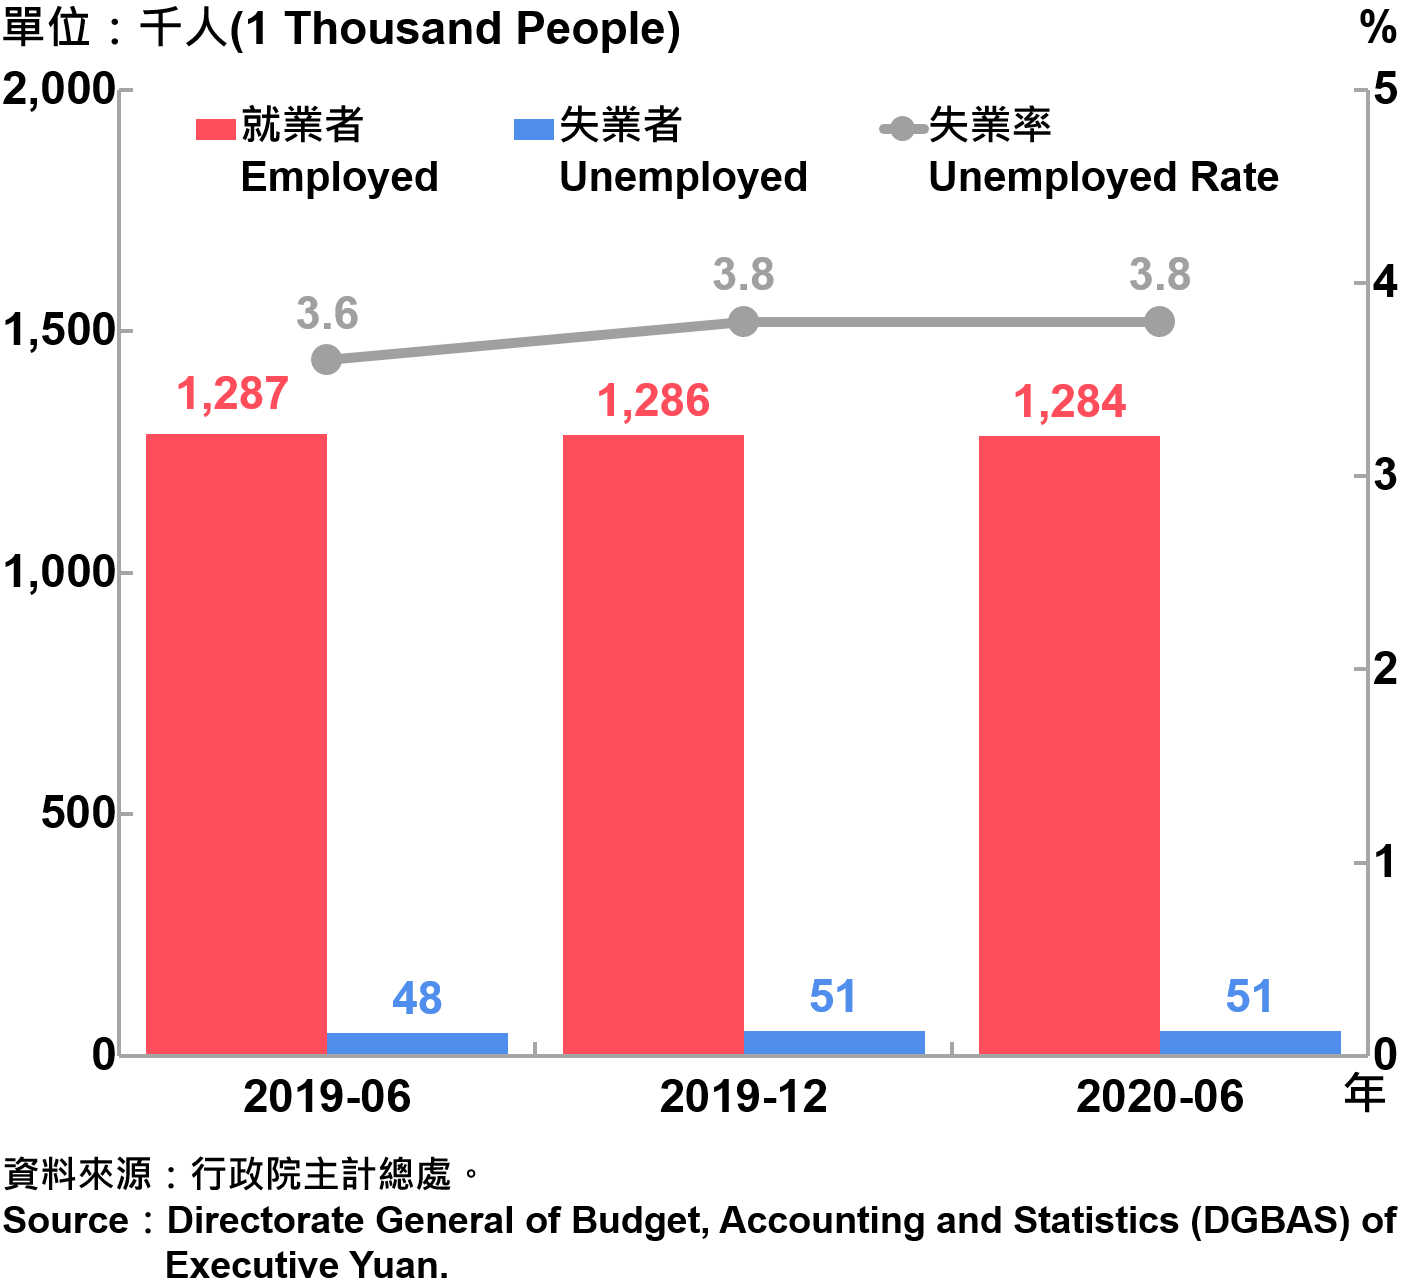 臺北市勞動力人數統計—2020Q2 Labor Force Statistics in Taipei City—2020Q2